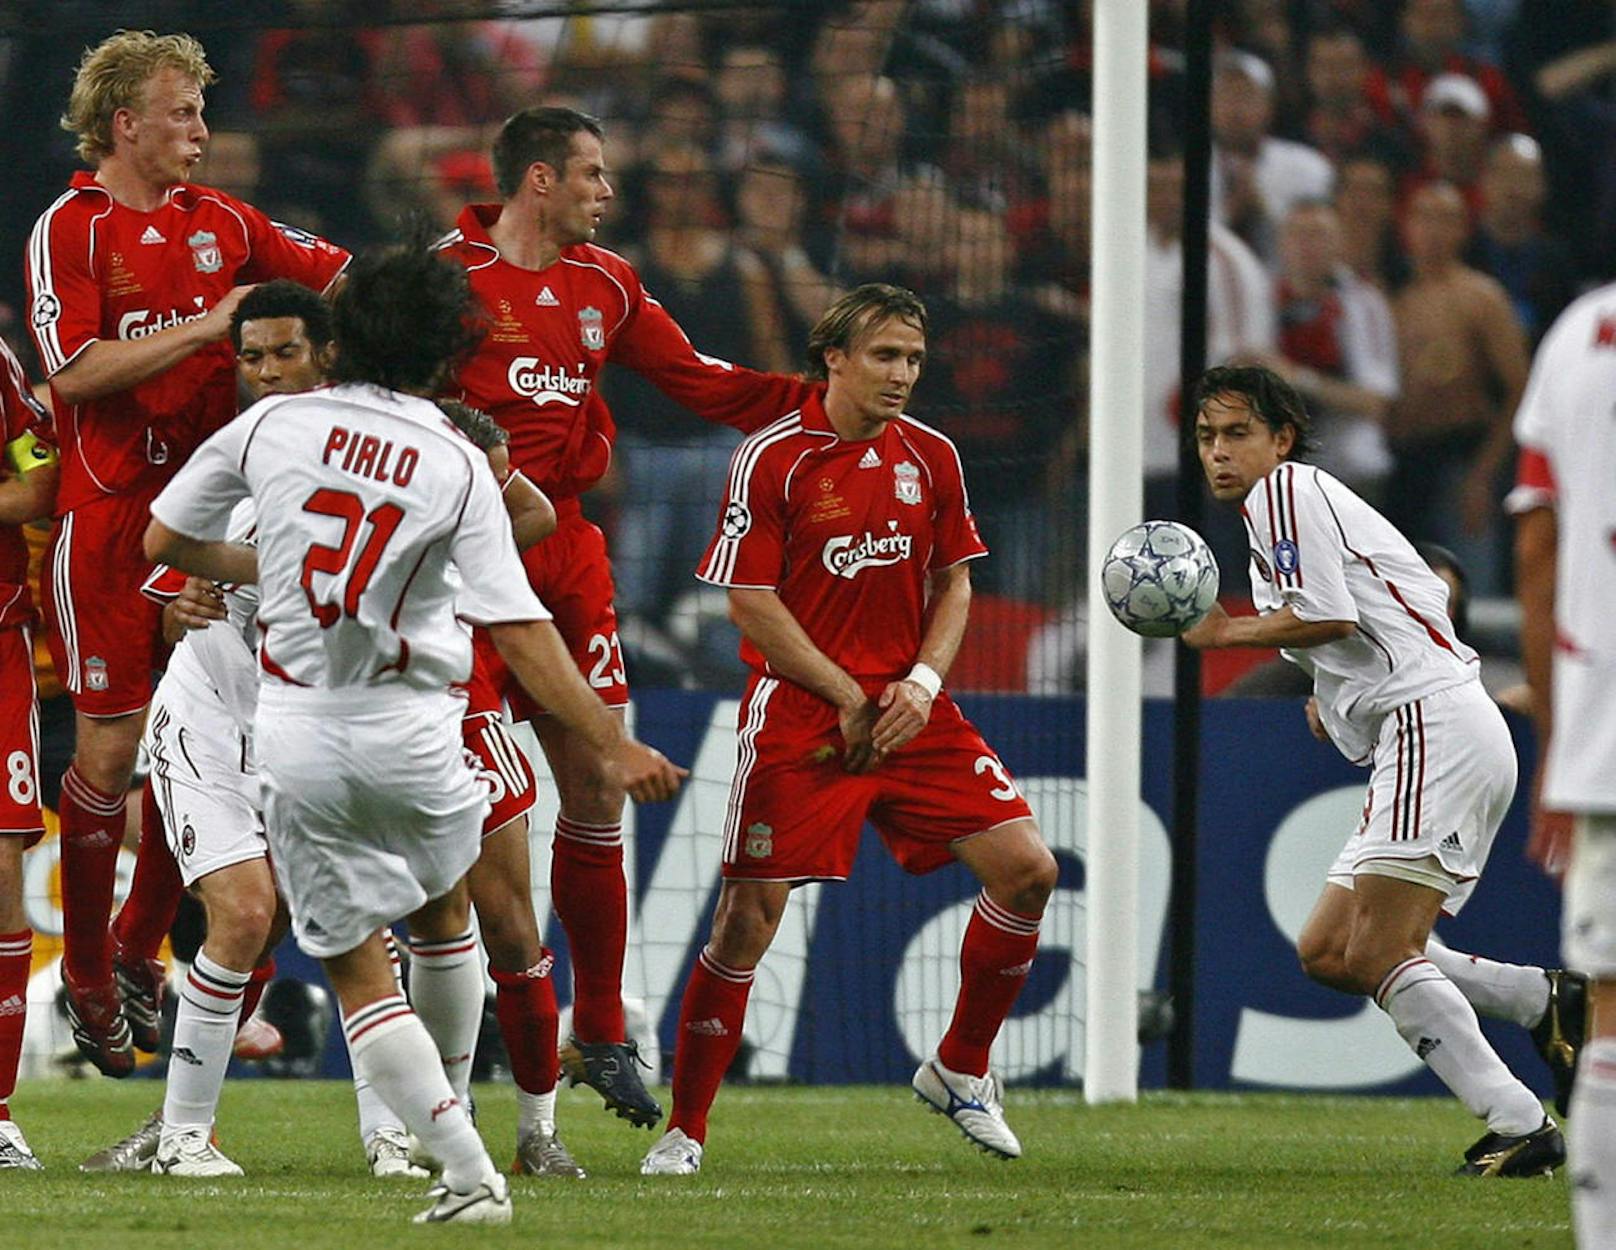 2007 war wieder der AC Milan an der Reihe. Filippo Inzaghi erzielte gegen Liverpool einen Doppelpack (45., 82.), der Anschlusstreffer von Dirk Kuyt kam zu spät (89.). Die von Carlo Ancelotti trainierten Italiener gewannen mit 2:1.